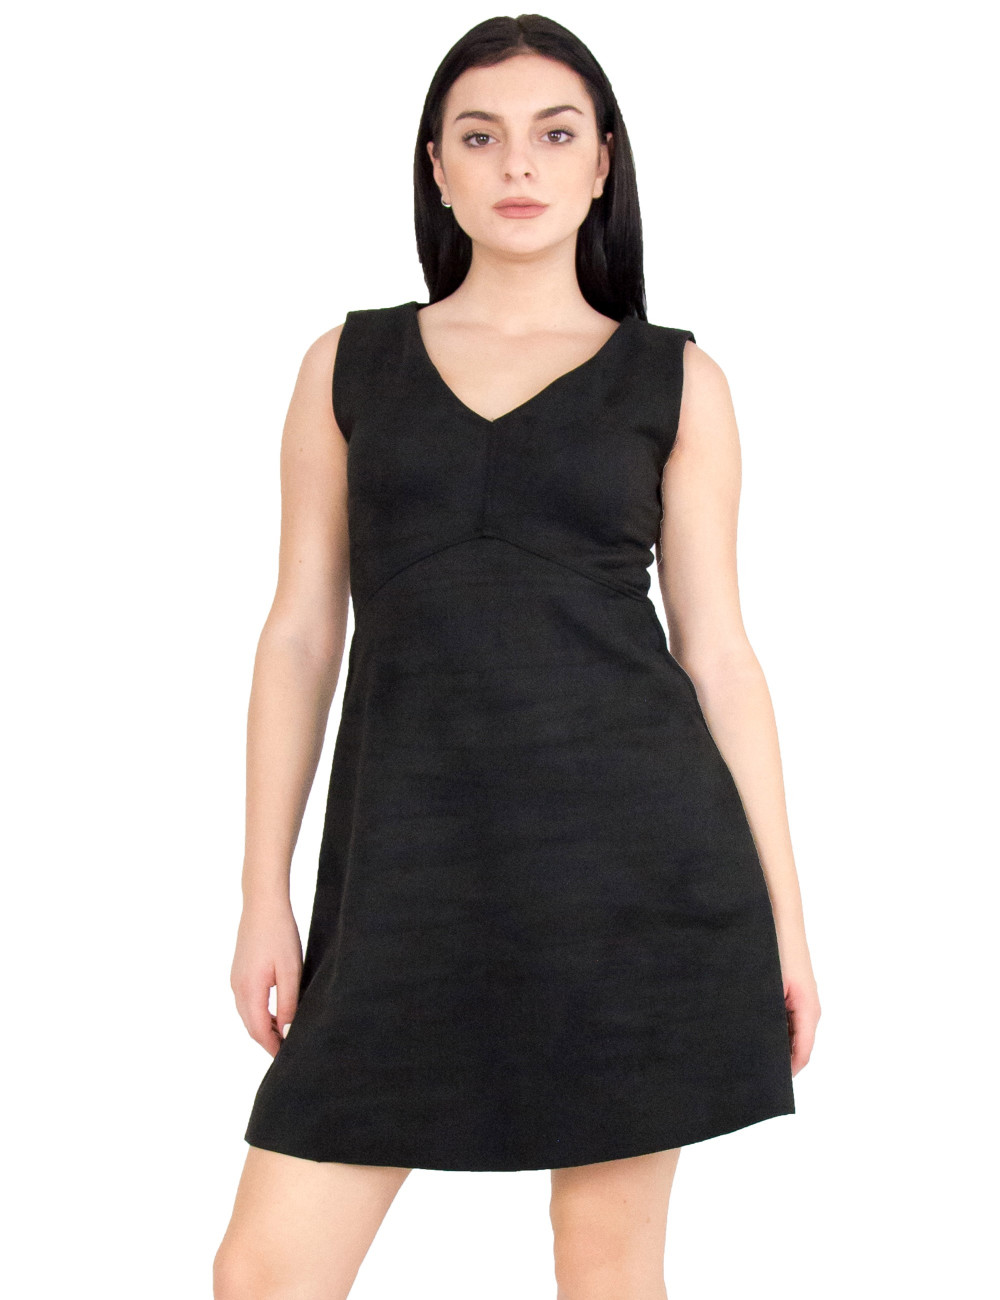 Γυναικείο μαύρο αμάνικο φόρεμα σουέντ Coocu 91411